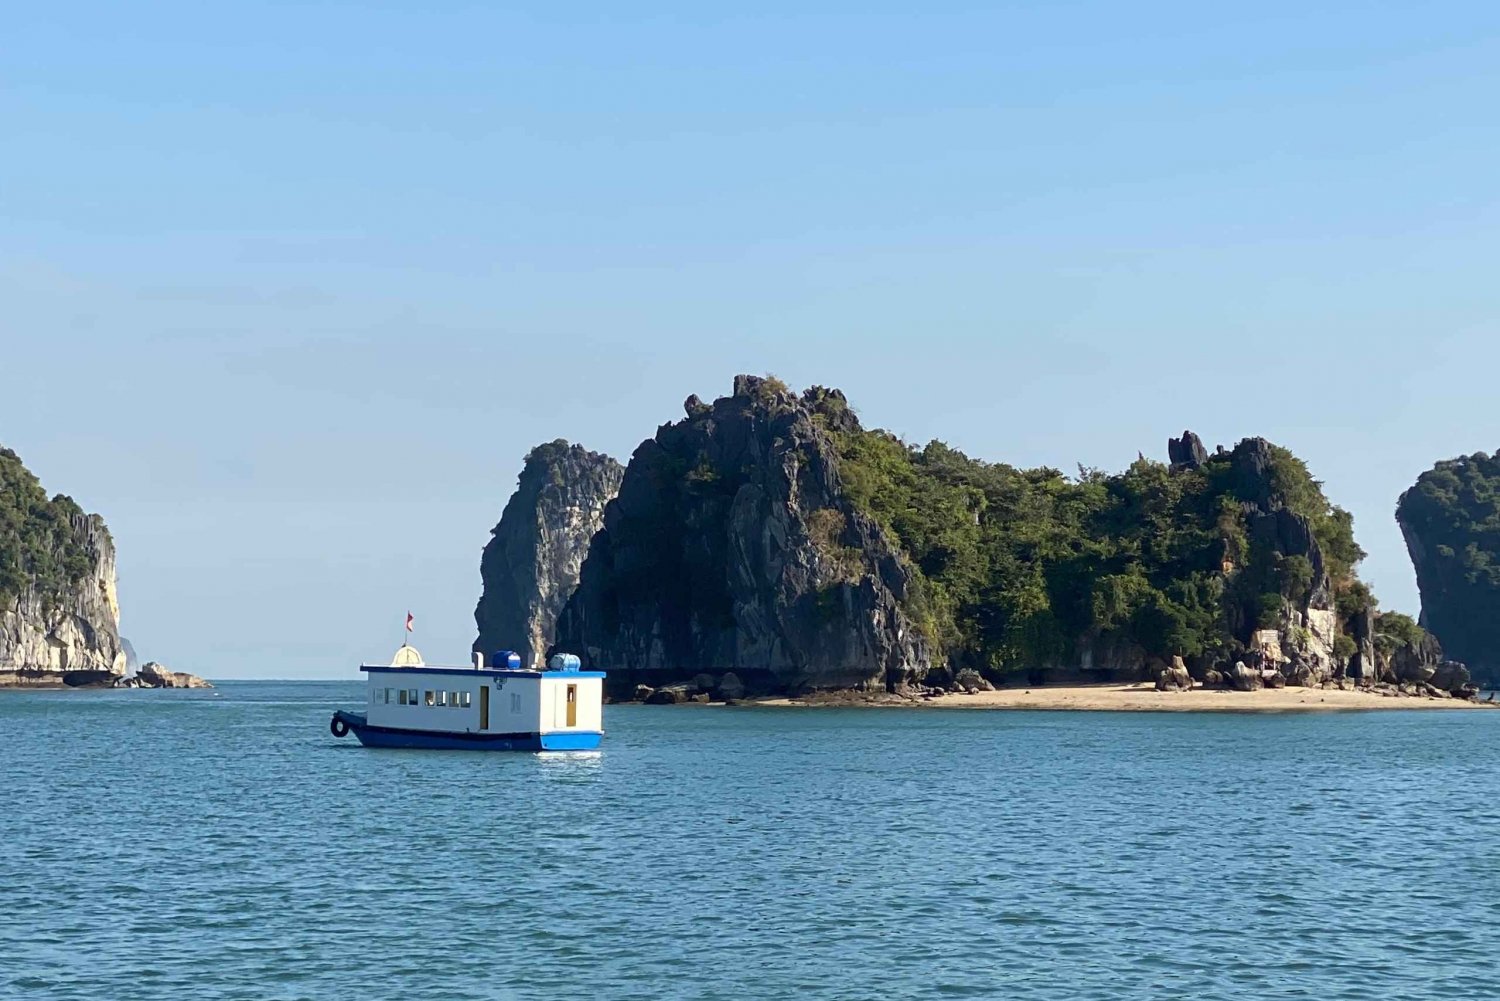 Halv dag Lan Ha Bay: Bådtur, kajaksejlads, snorkling